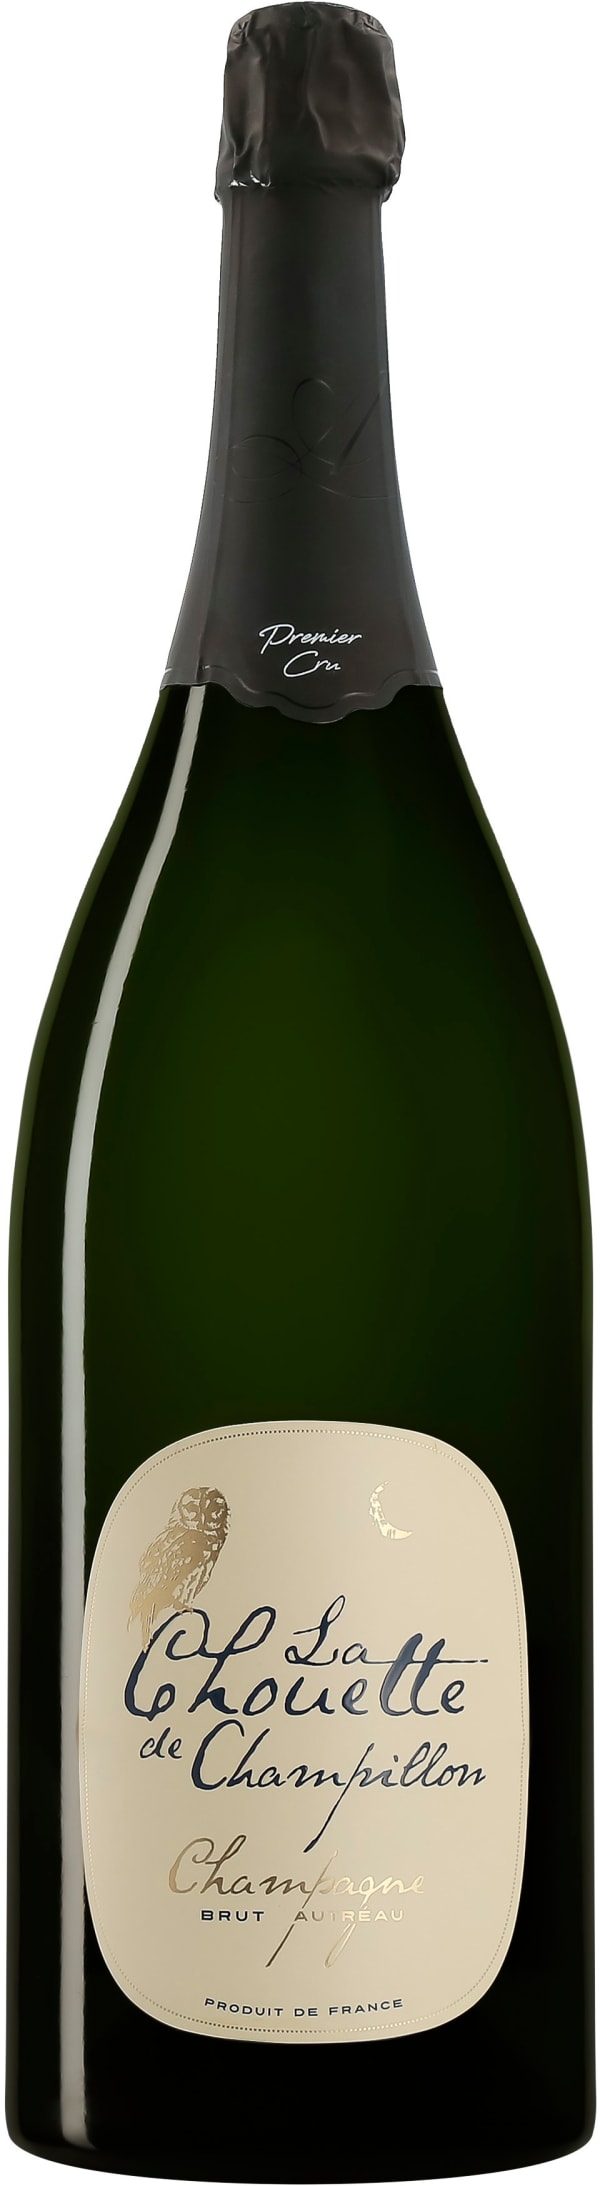 La Chouette de Champillon Champagne Brut Jeroboam